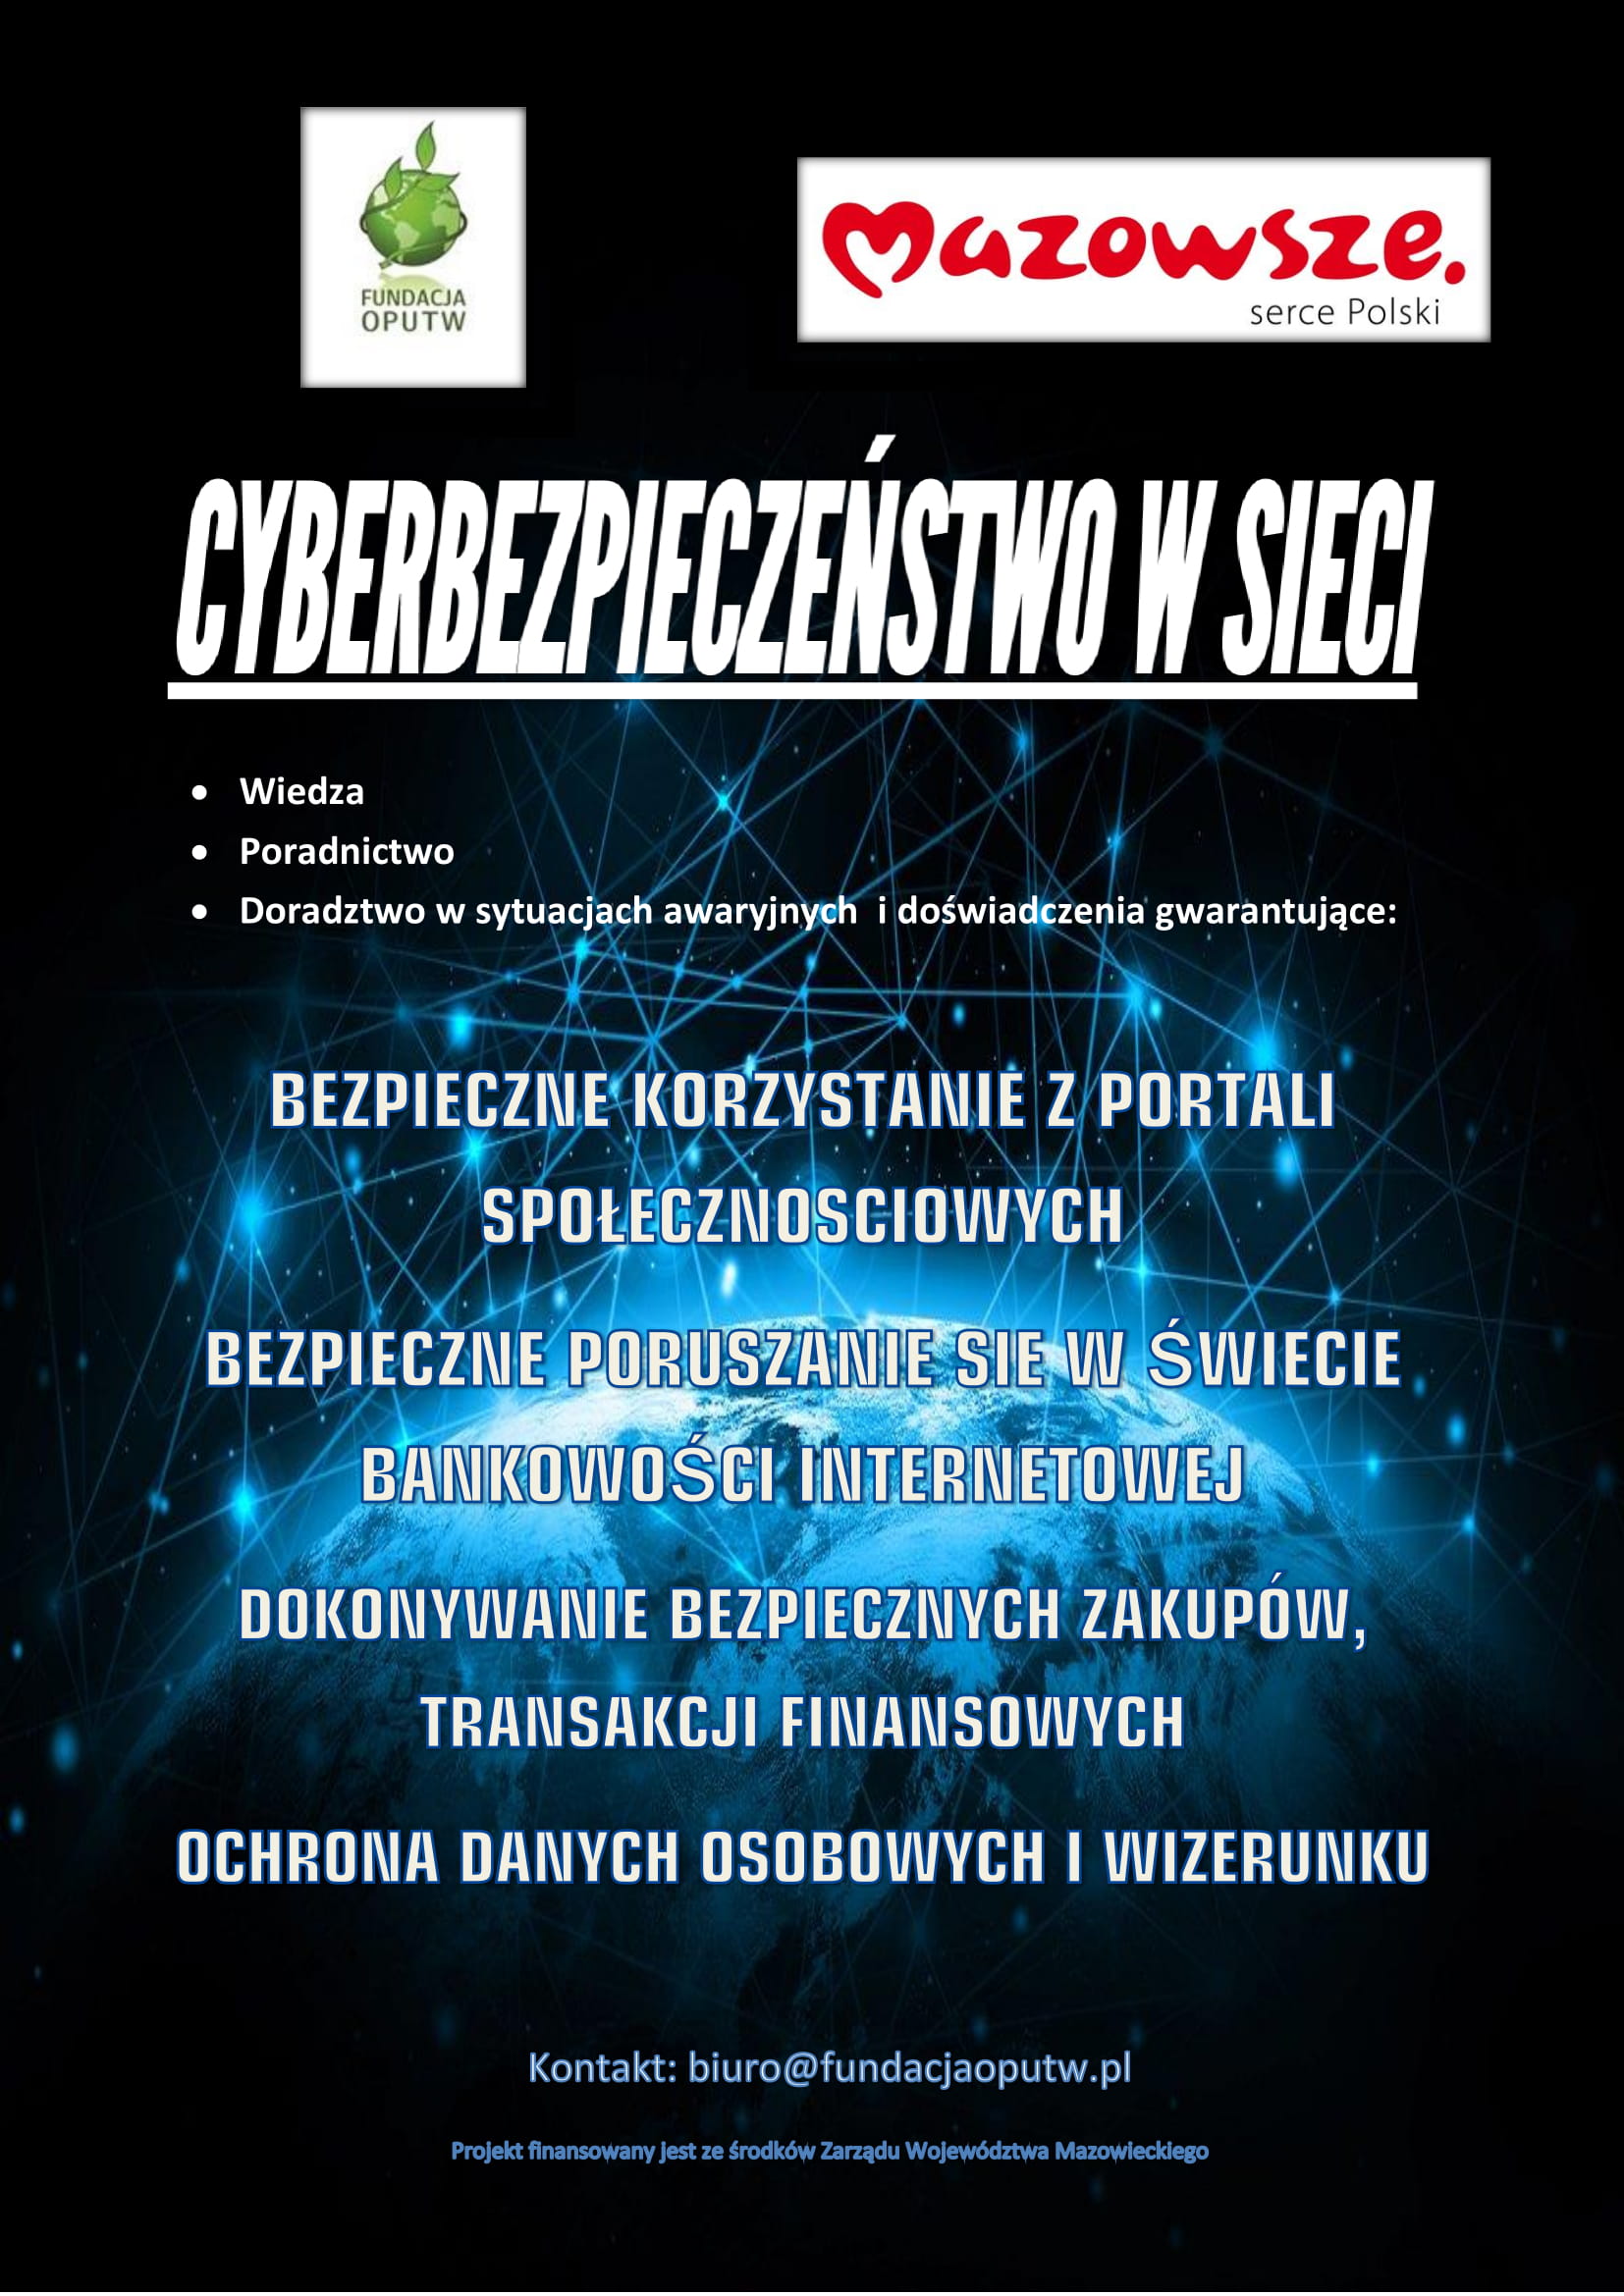 Cyberbezpieczeństwo w sieci